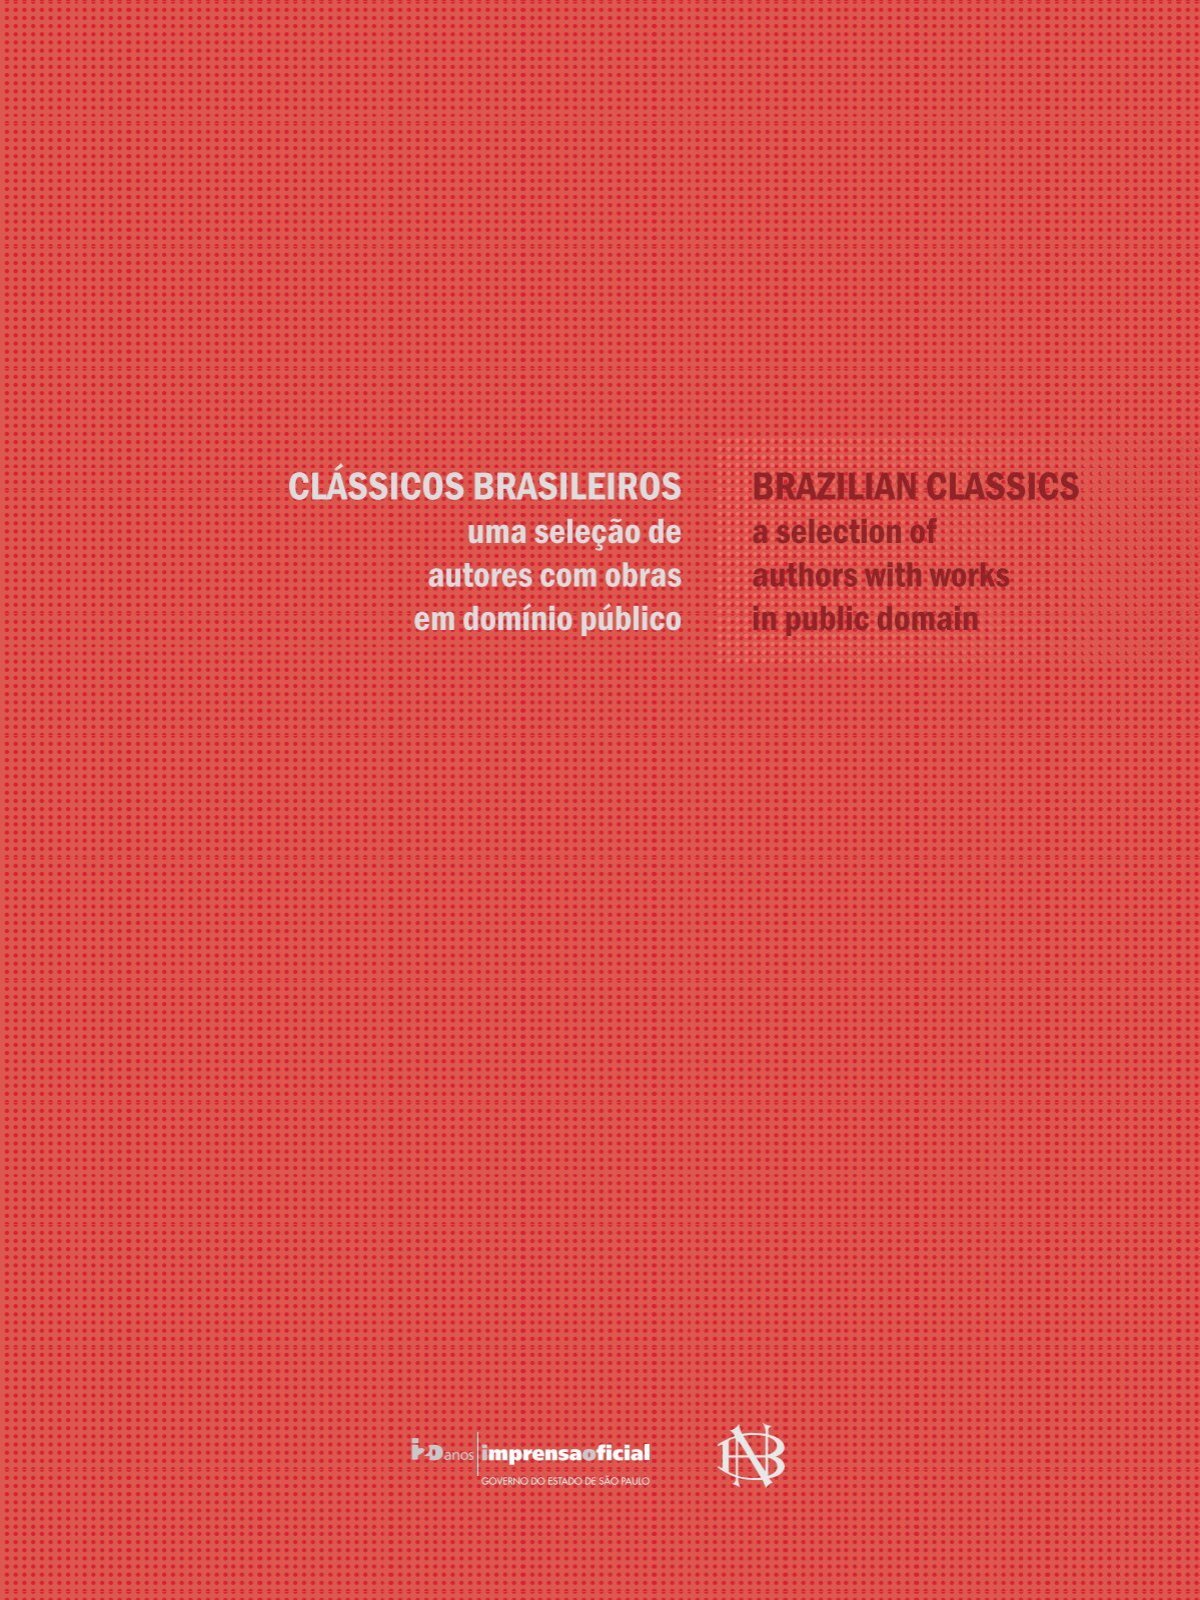 Classicos Brasileiros Brazilian Classics Imprensa Oficial